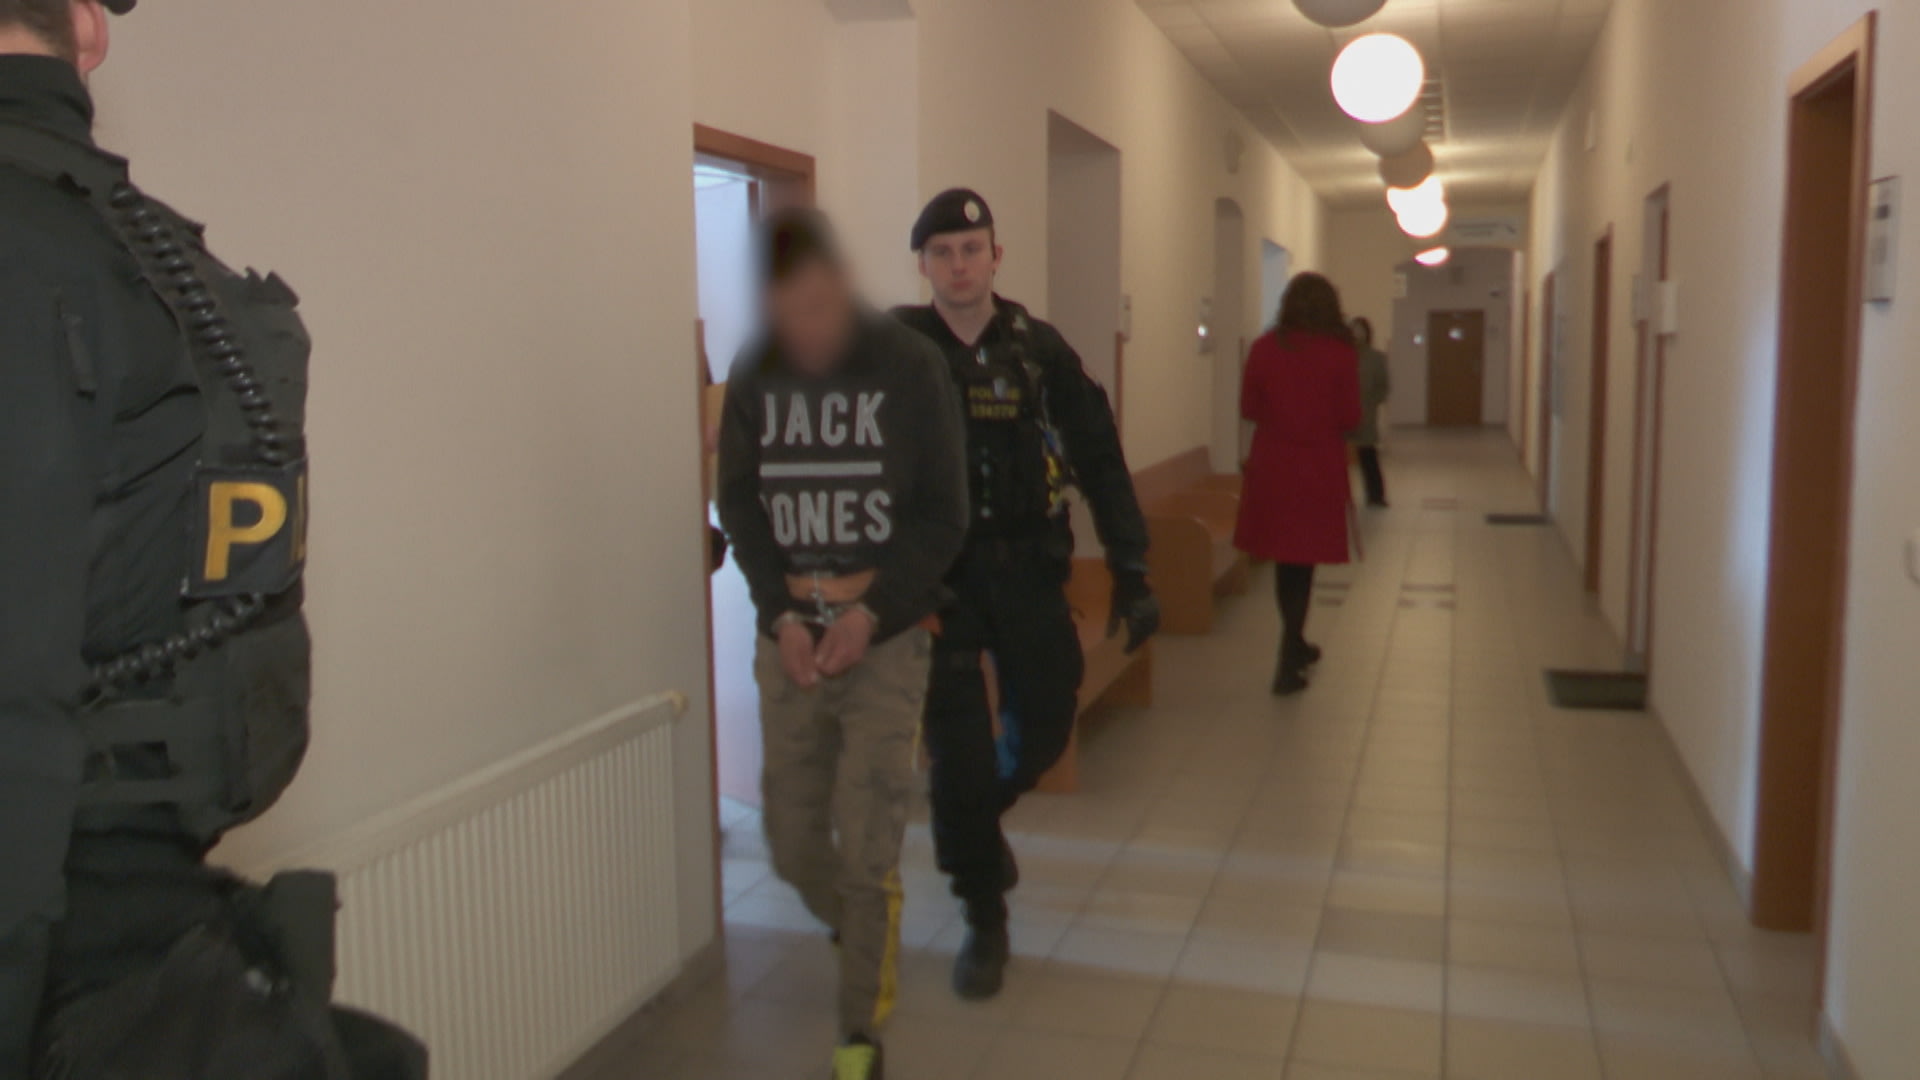 Agresora, který měl v Plzni pobodat dva muže, soud poslal do vazby